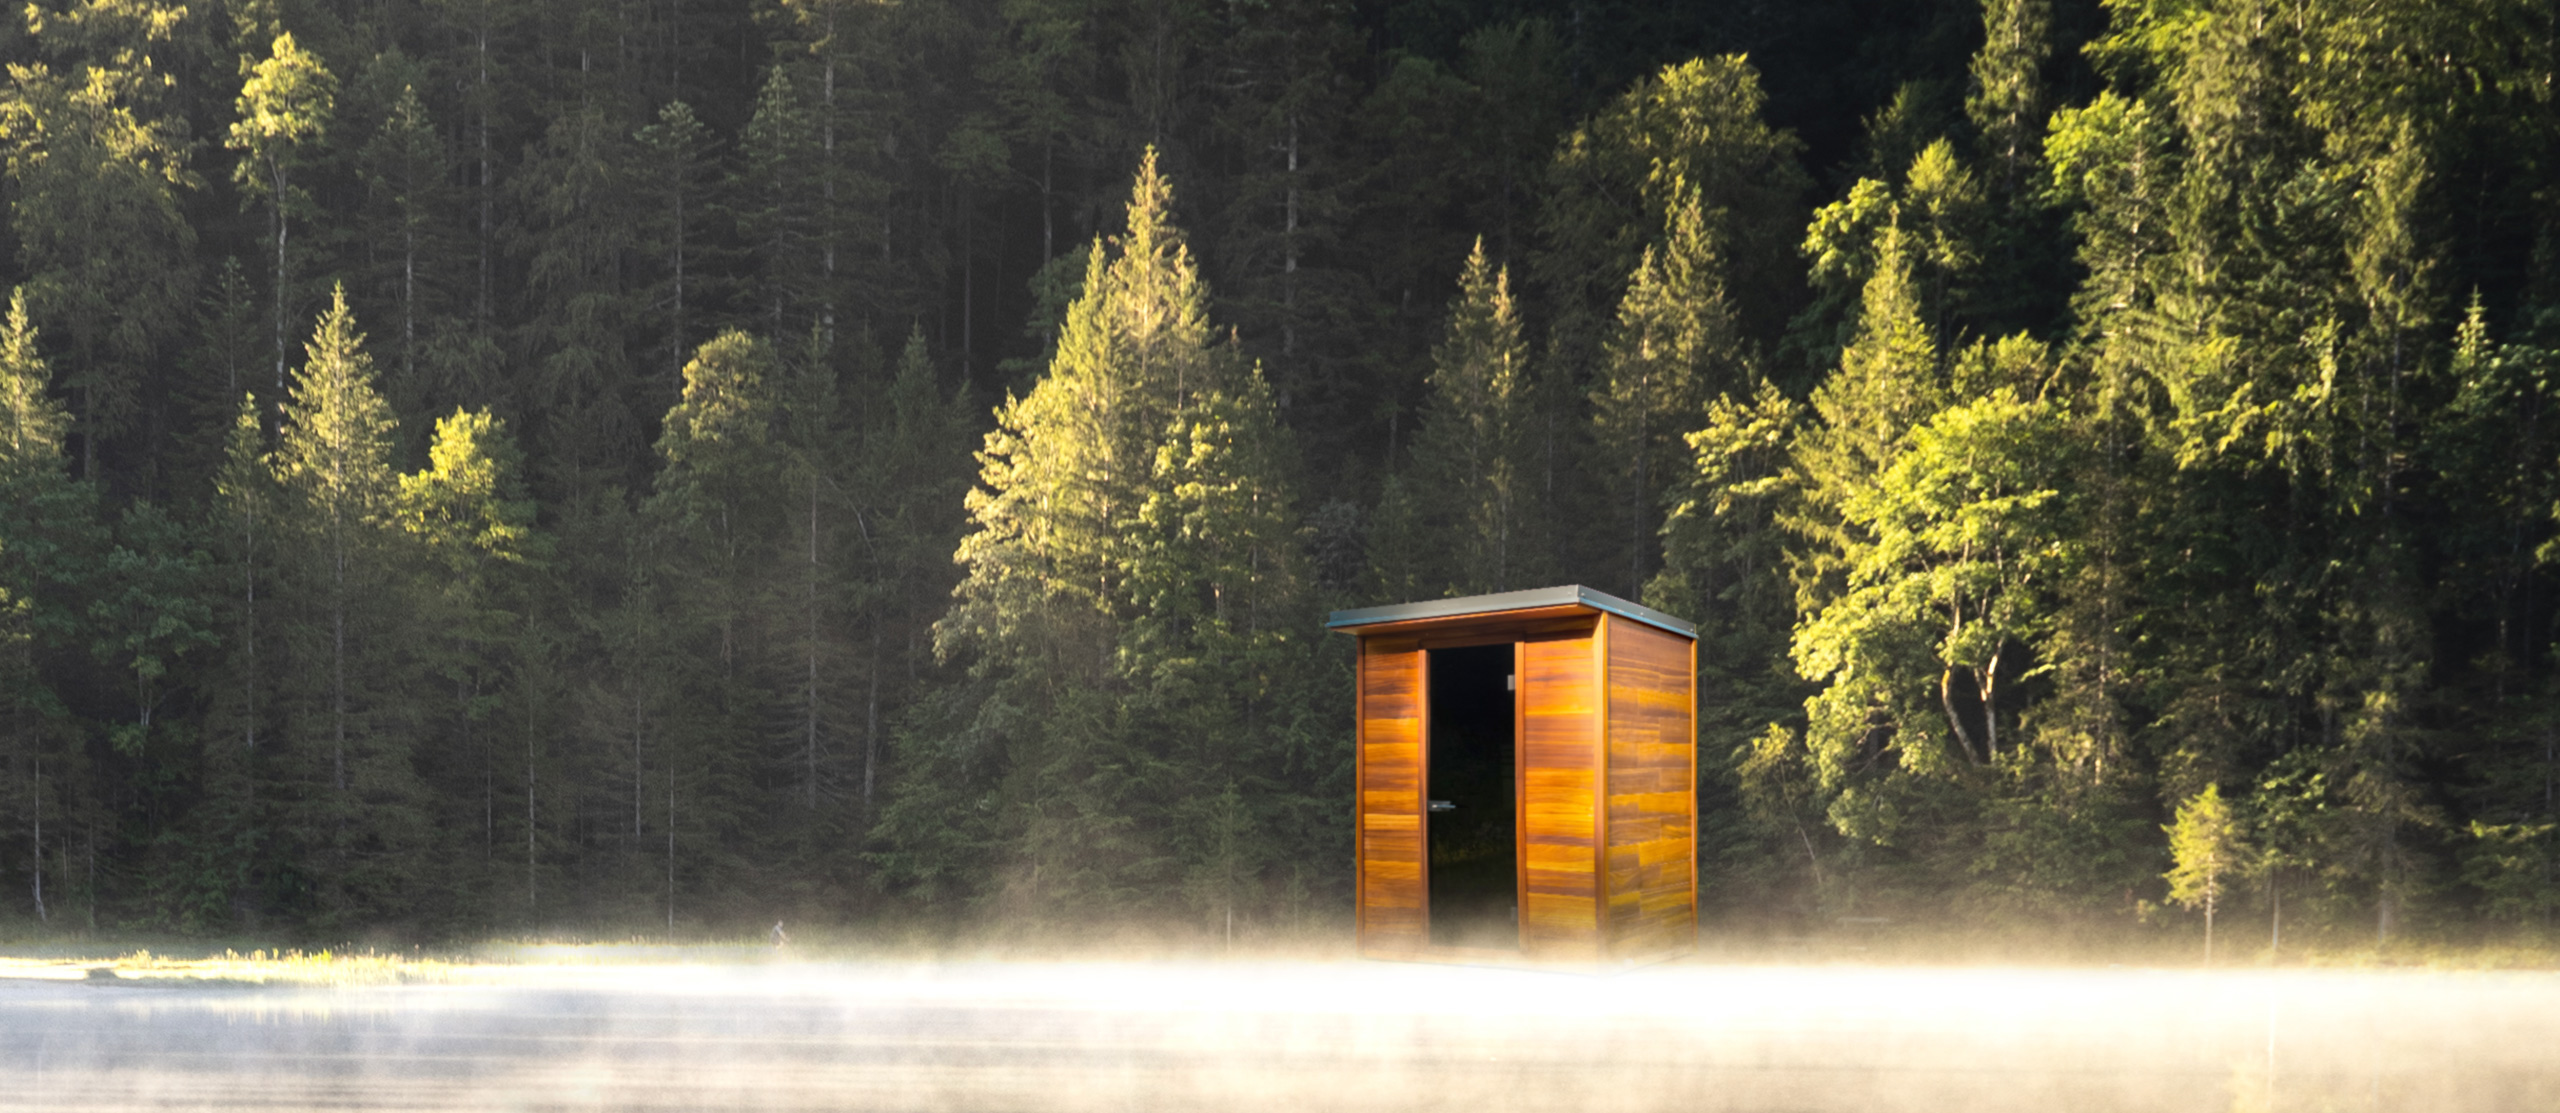 Venkovní sauny